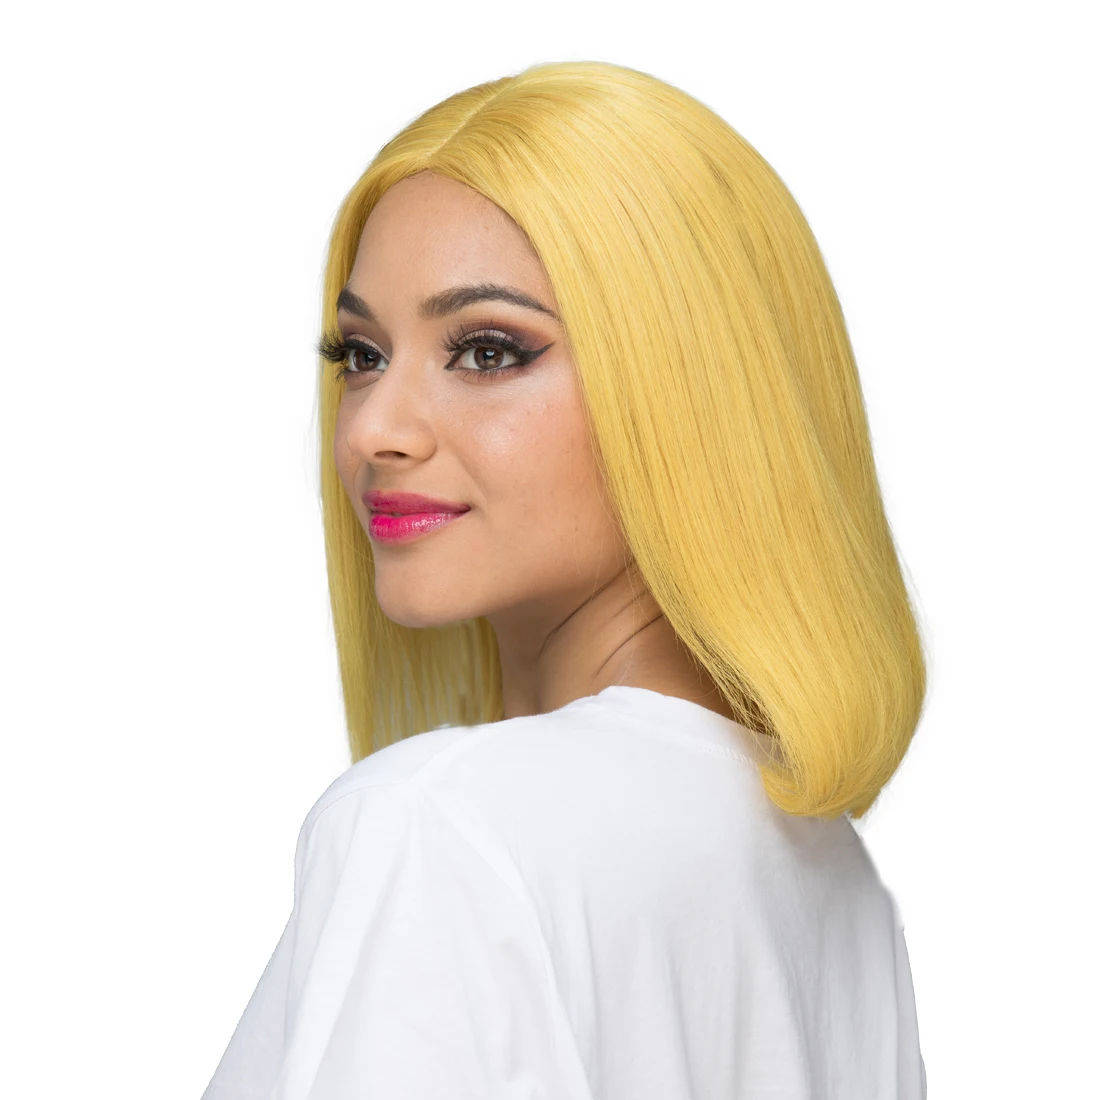 Pelucas de cabello humano Bob de color amarillo real de jengibre de Lsy Hair, pelucas de cabello humano virgen con frente de encaje corto recto sin cola para la venta .jpg